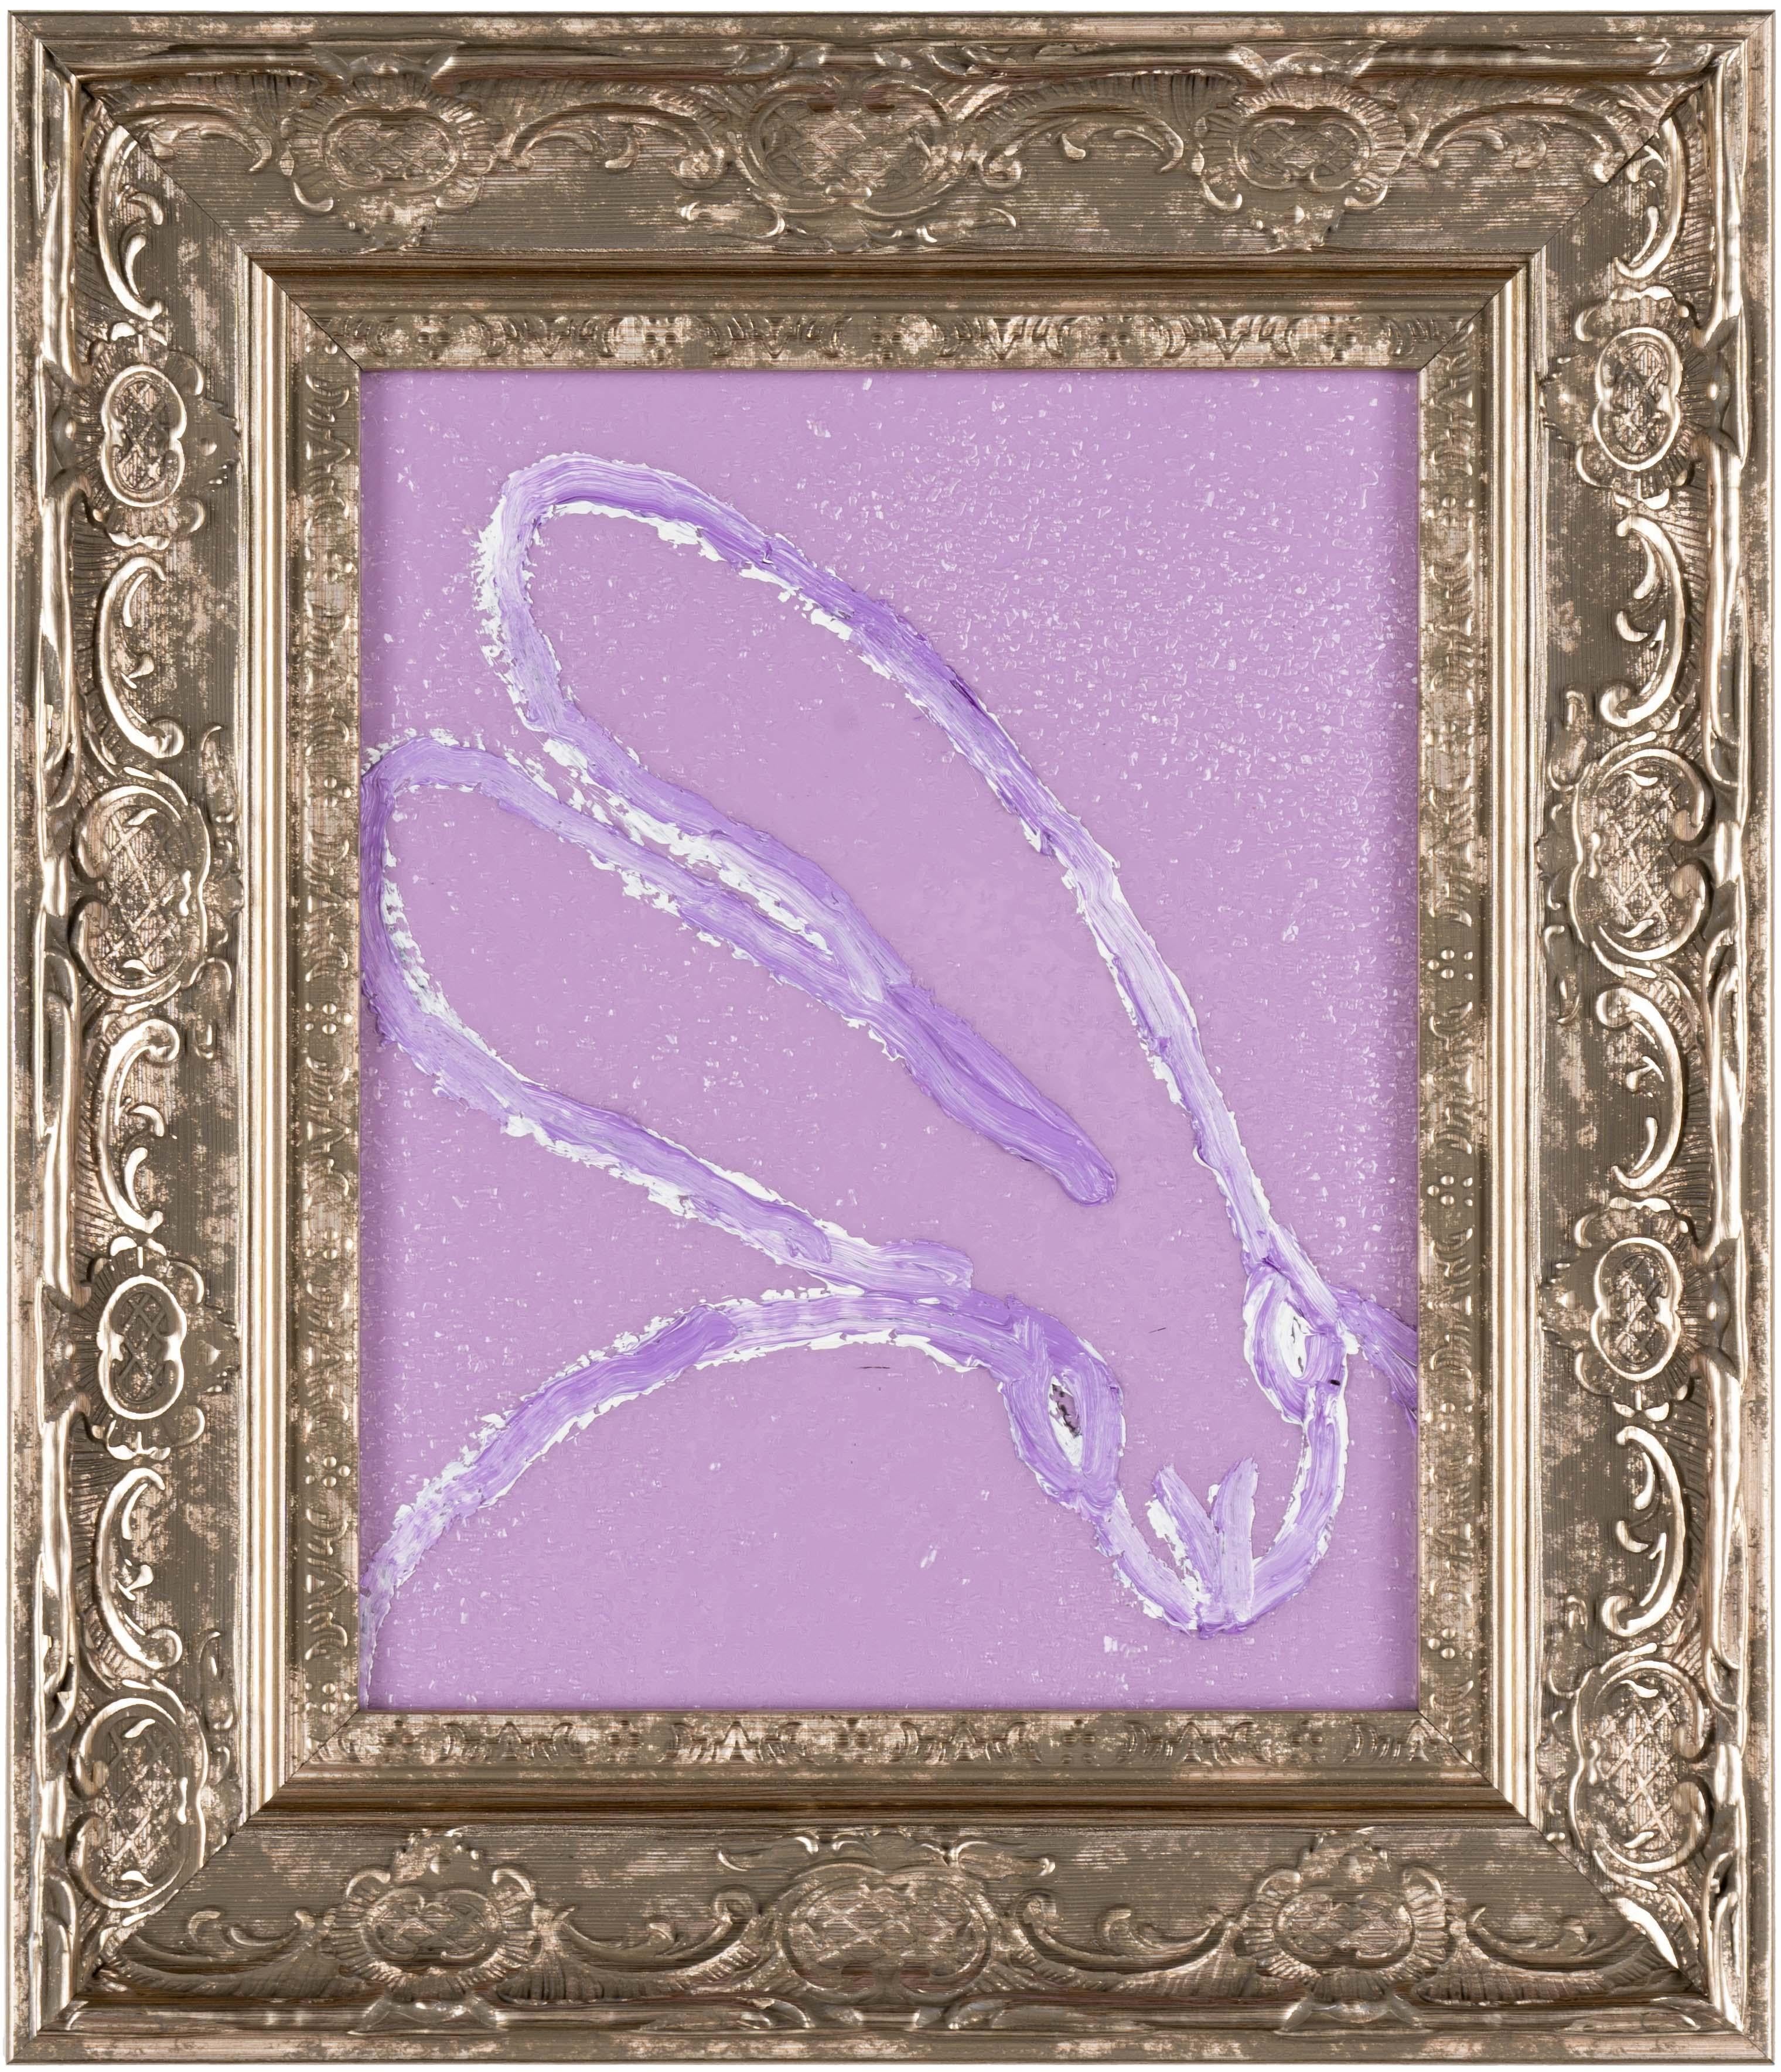 Hunt Slonem "Lilas" Lapin de poussière de diamant violet